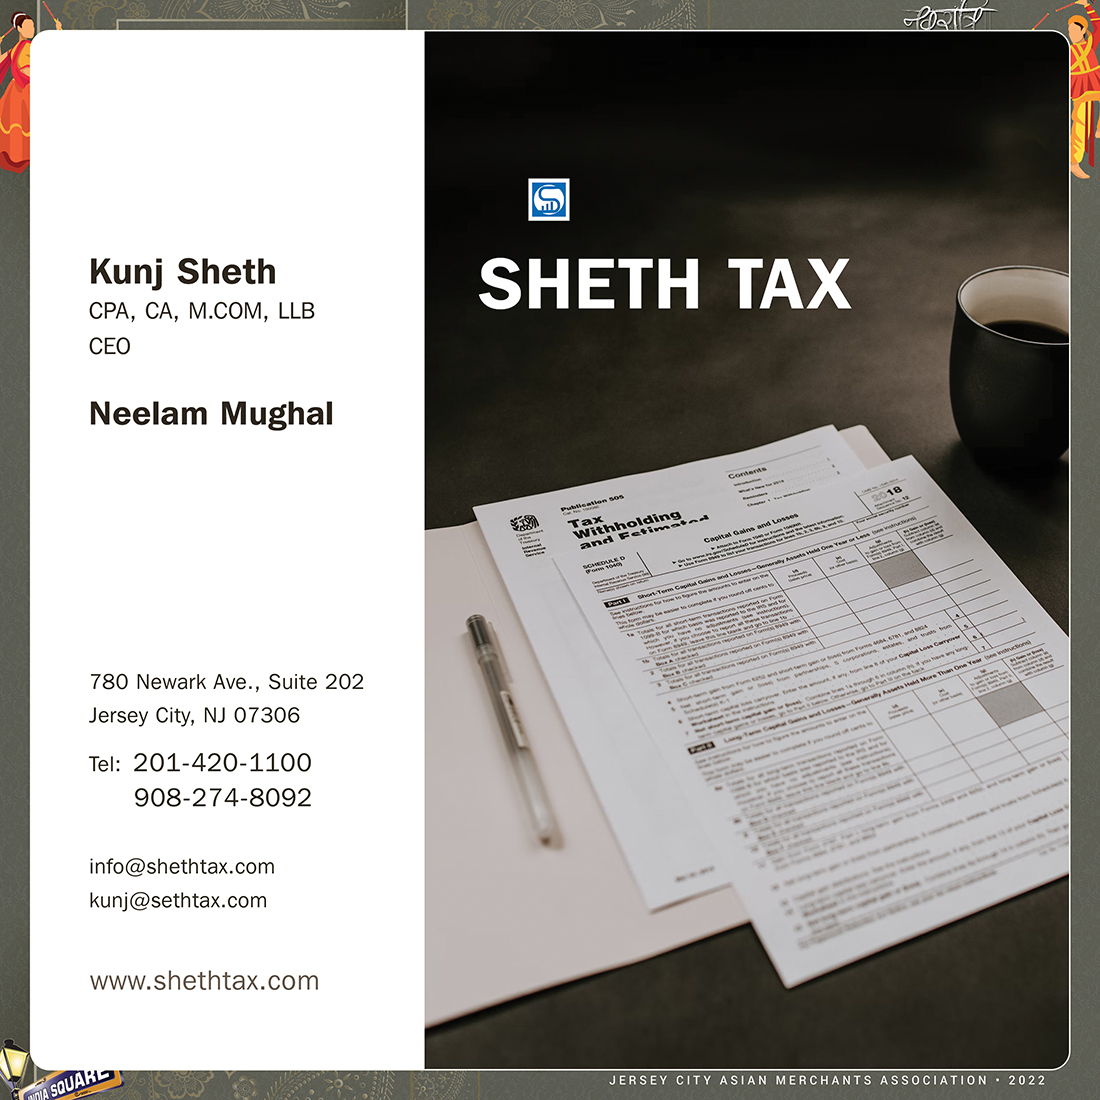 37 Shaet Tax.jpg